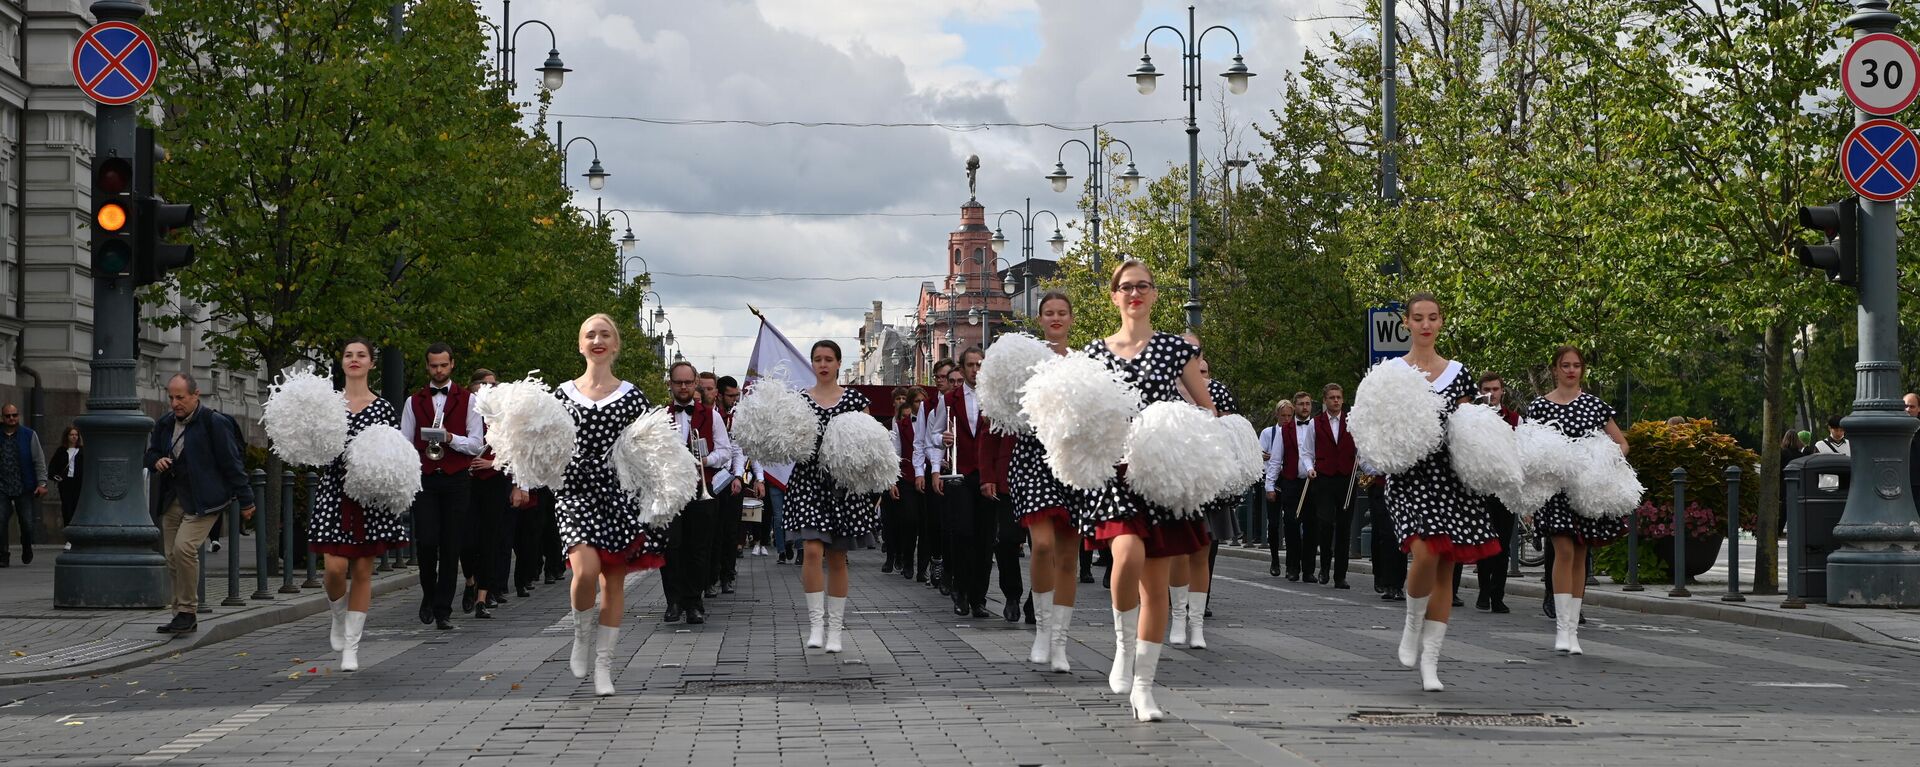 Студенты на параде в честь Дня знаний в Вильнюсе - Sputnik Lietuva, 1920, 02.09.2021